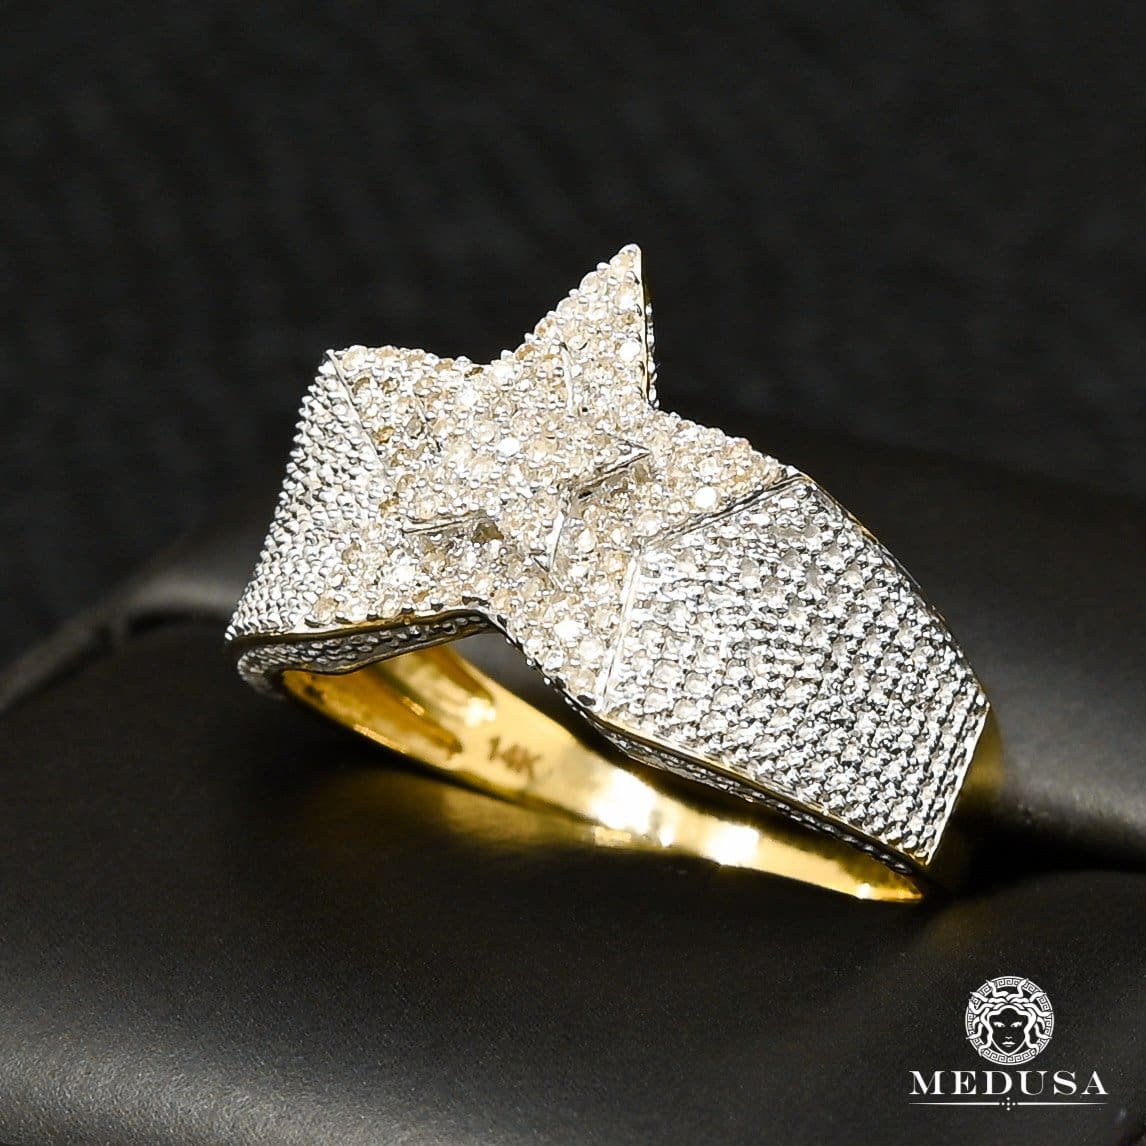 10K Gold Diamond Ring | SuperStar D8 Men's Ring - 40PT Diamond / 2 Tone Gold